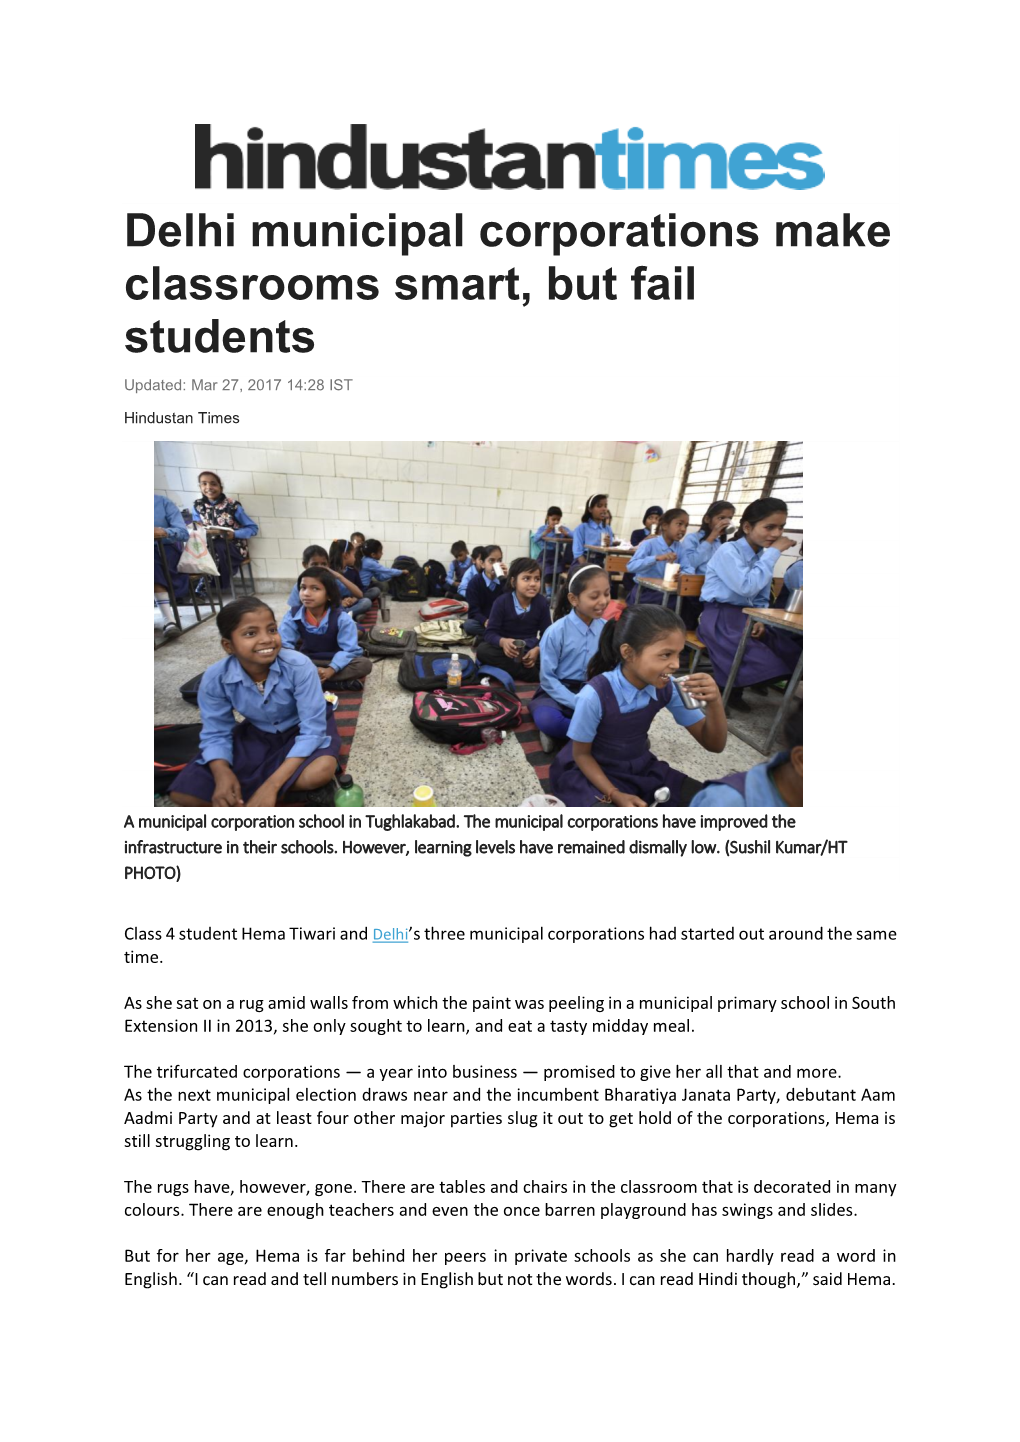 Delhi Municipal Corporations Make Classrooms Smart, but Fail Students